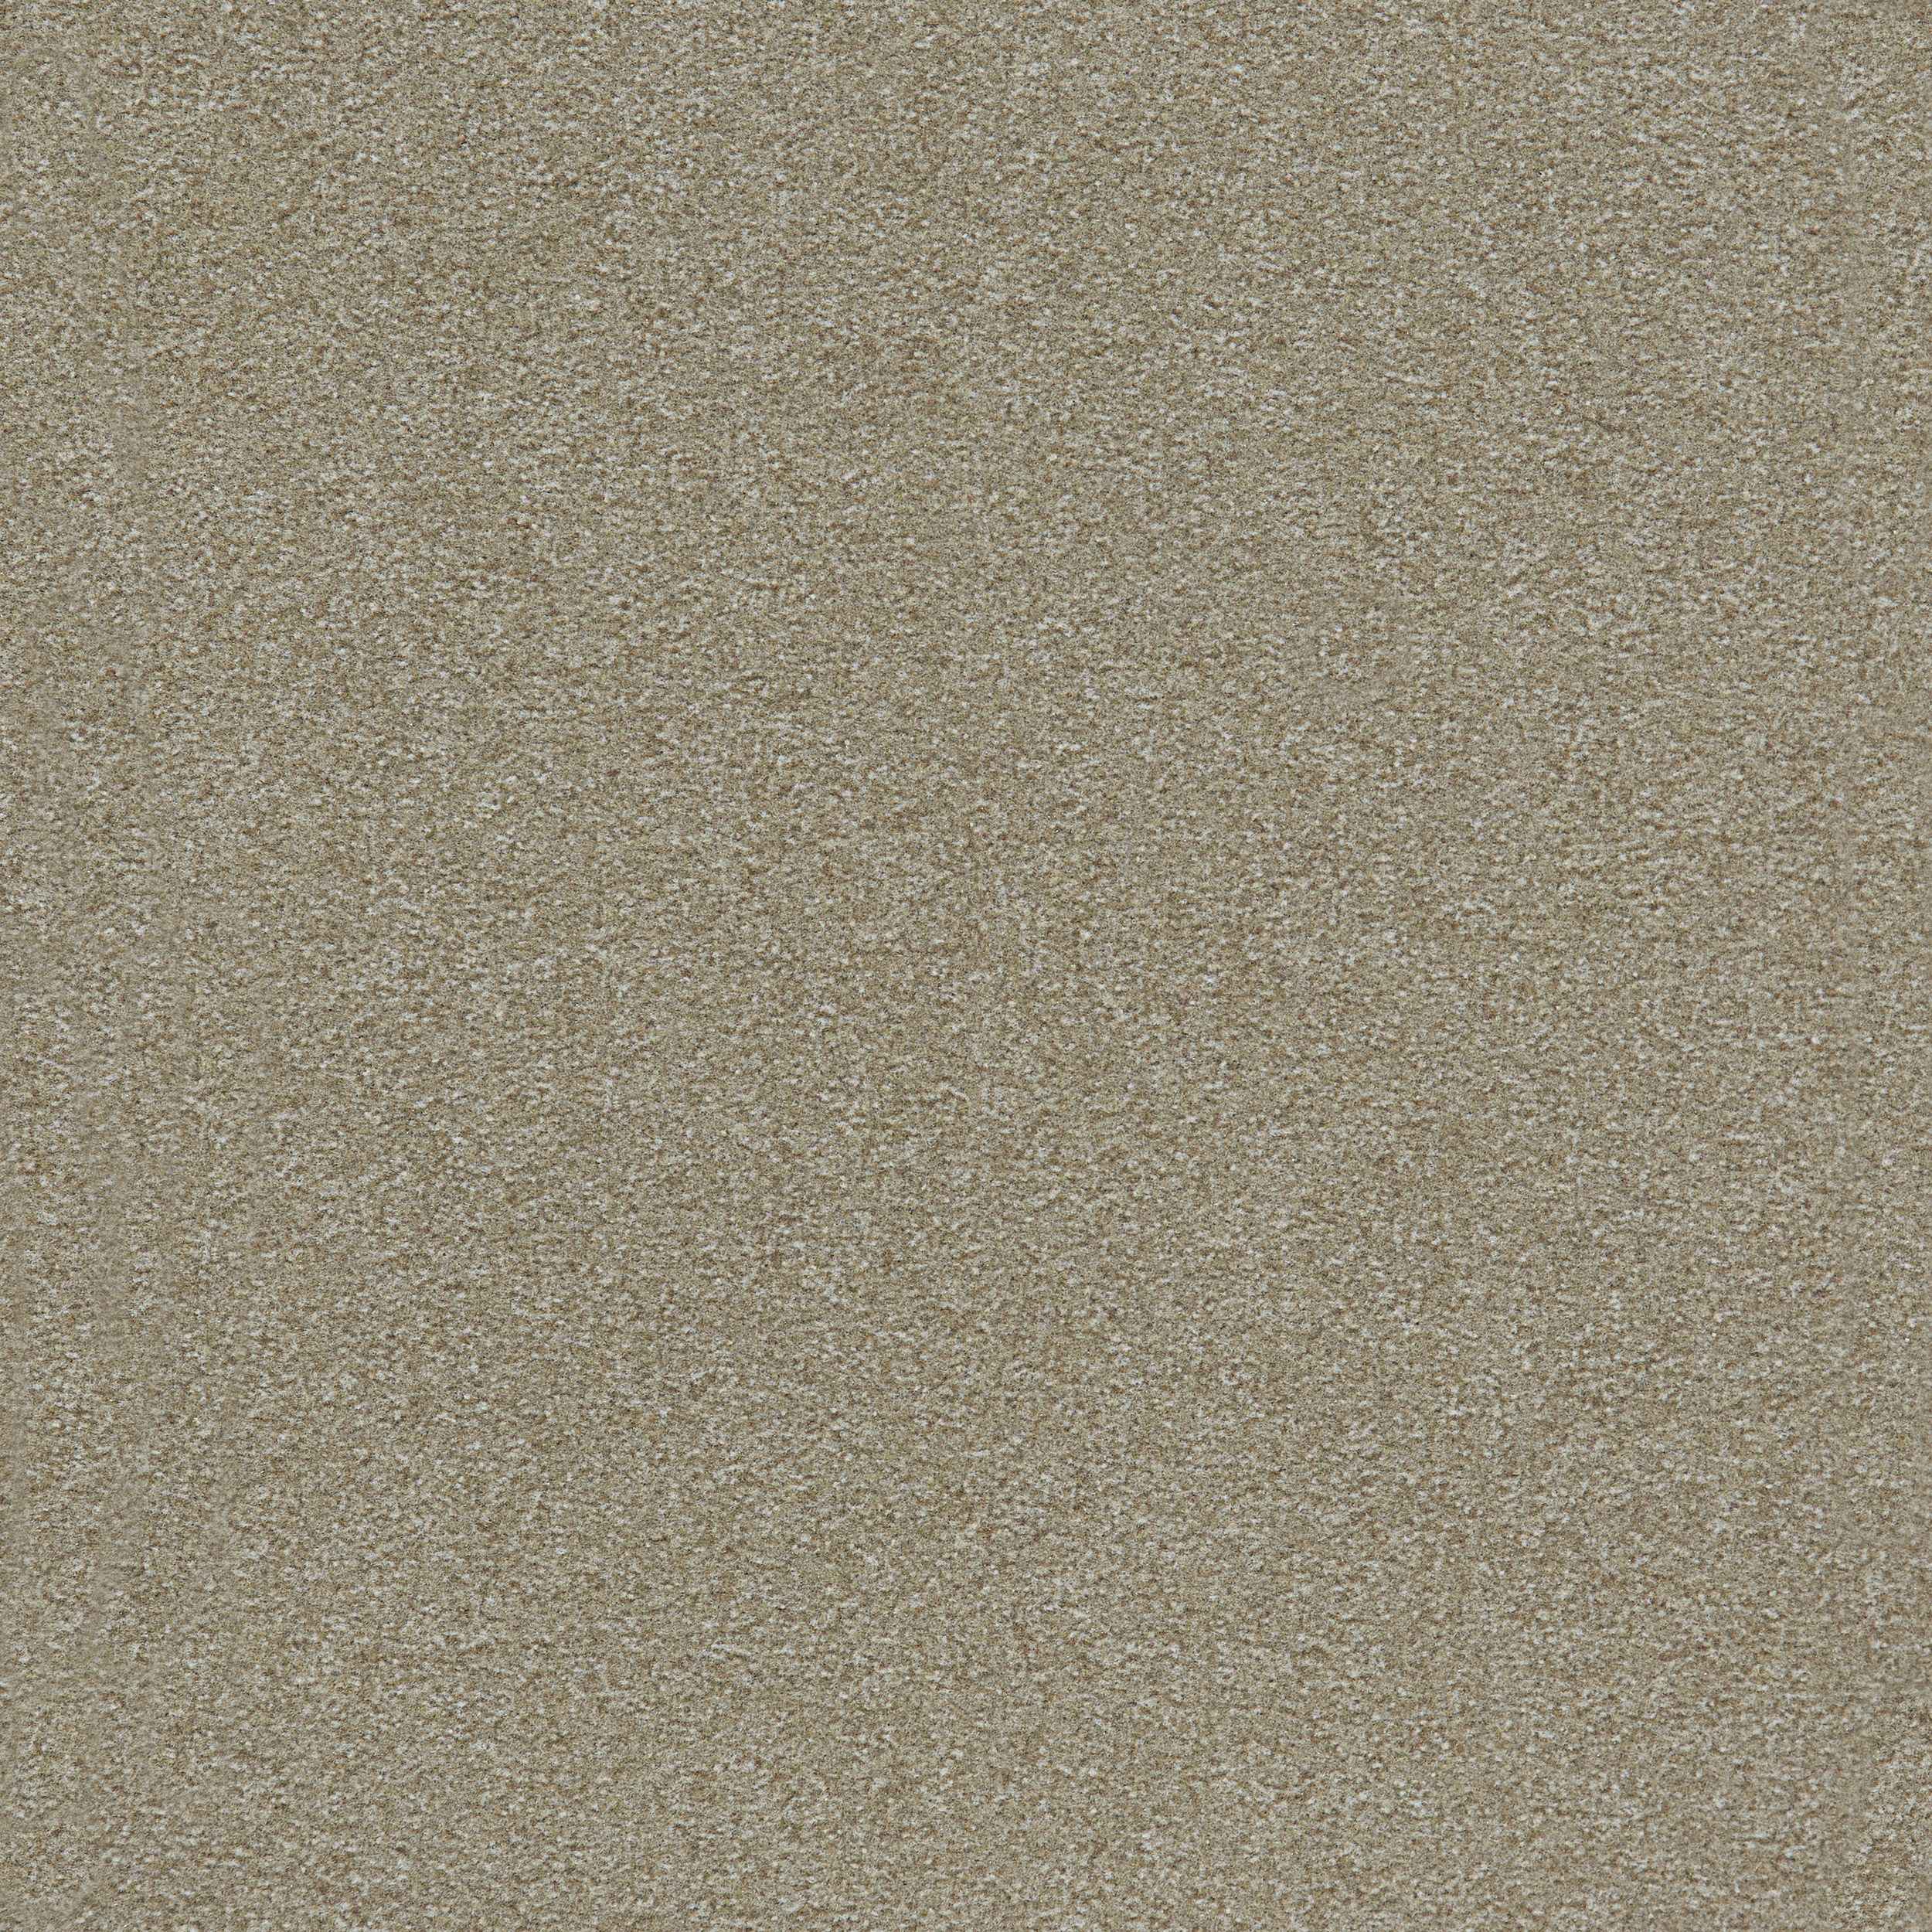 Heuga 725 Carpet Tile In Oyster número de imagen 6